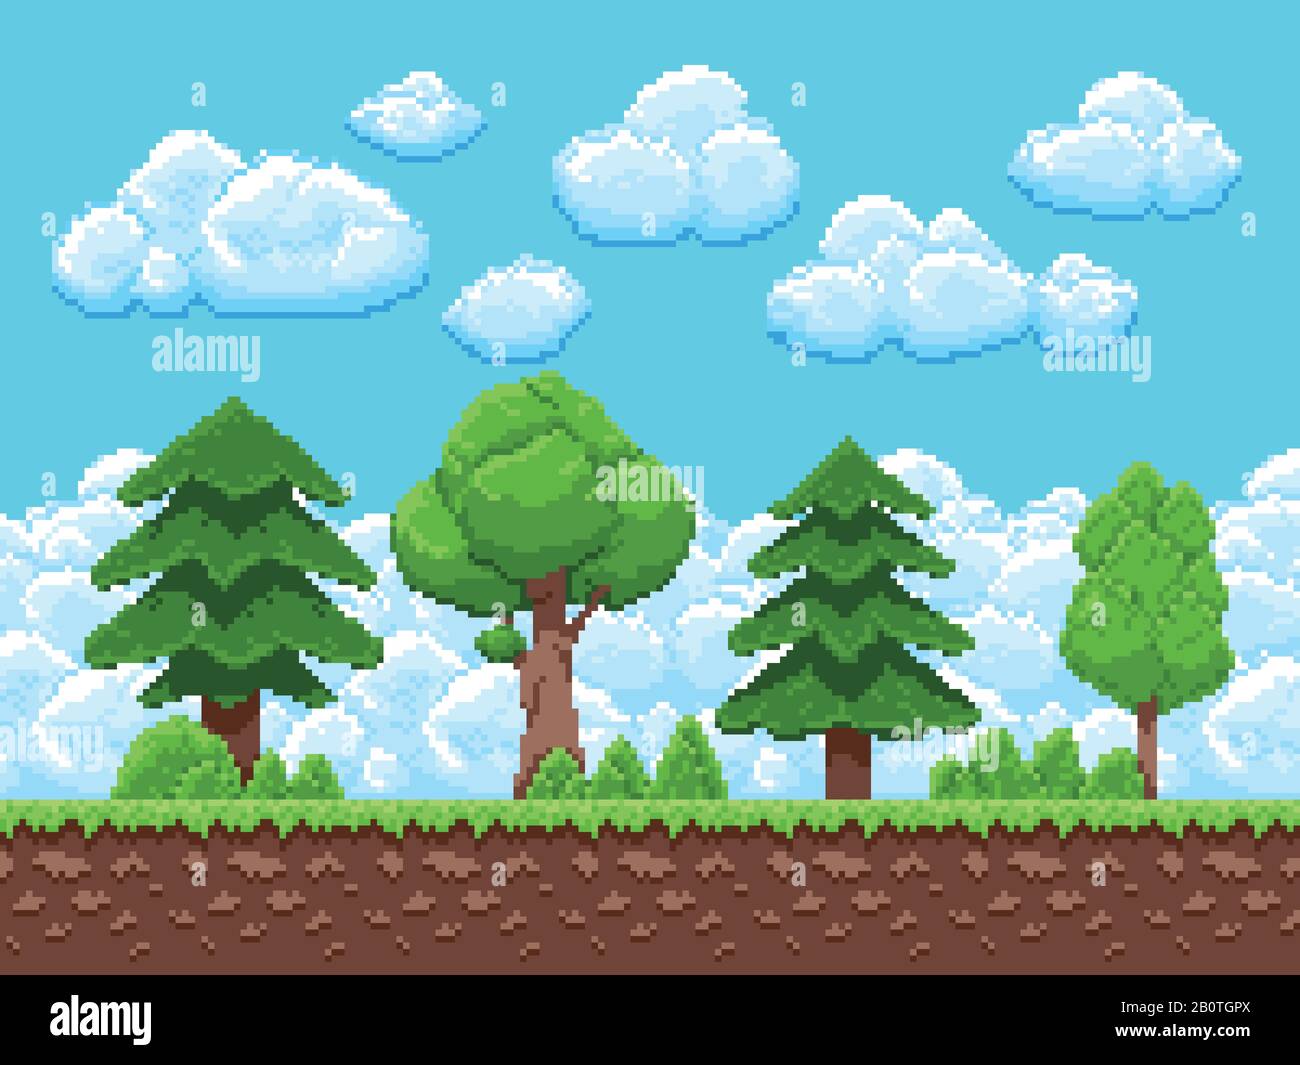 Paysage vectoriel de jeu de pixels avec arbres, ciel et nuages pour jeu d'arcade vintage de 8 bits. Illustration de l'interface de scène de jeu paysage Illustration de Vecteur